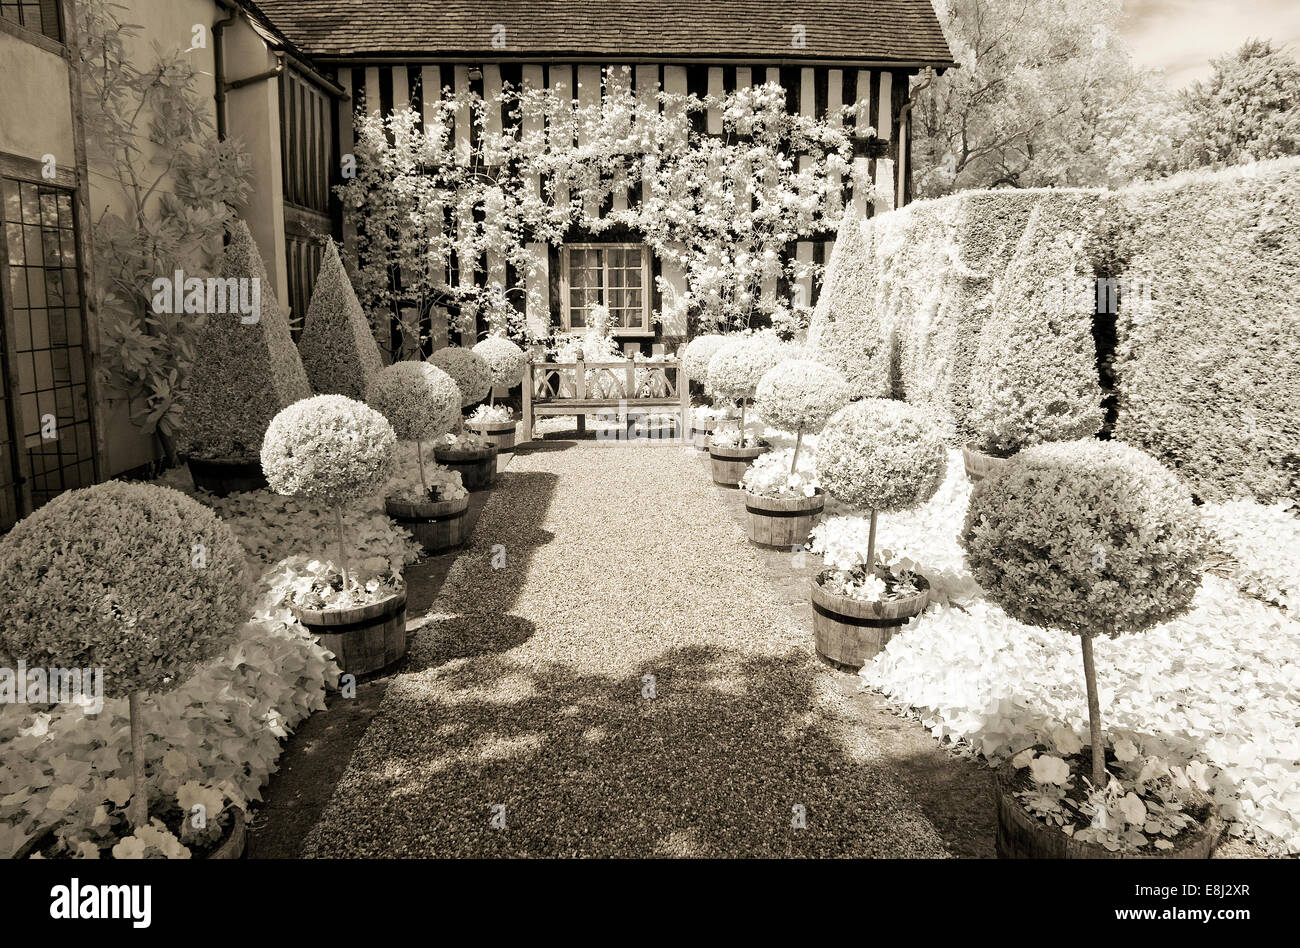 Photographie infrarouge d'un jardin anglais classique, fort des ballons et des pyramides de chaque côté du chemin de gravier, avec banc en bois en tant que centre de p Banque D'Images